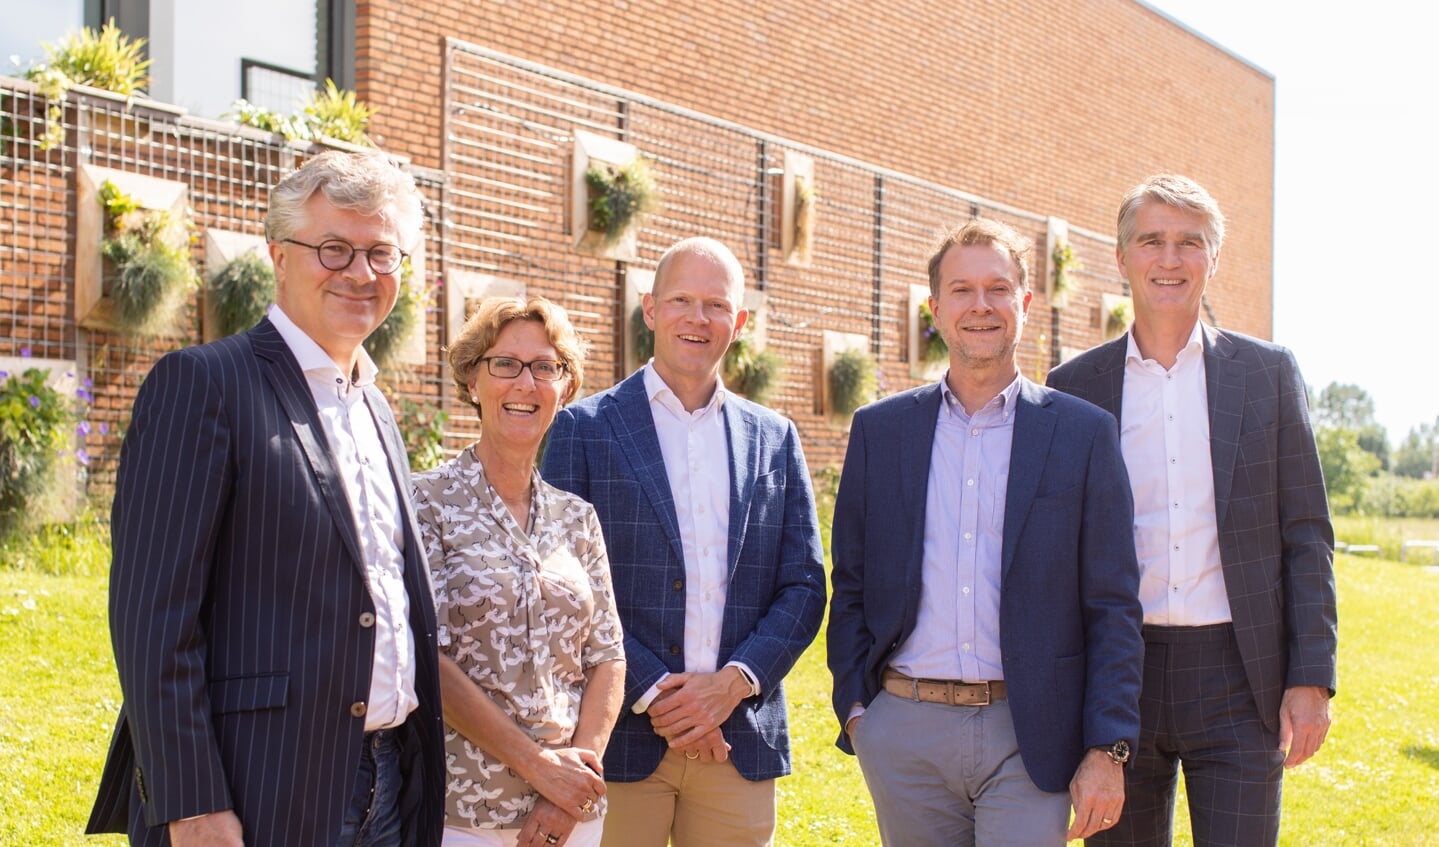 De RvT van ORS Lek en Linge (van links naar rechts) Henrik Stevens, Ilona van Wamel, Martin van Zuilekom, Twan Kemperman, Hans van Zuijdam.